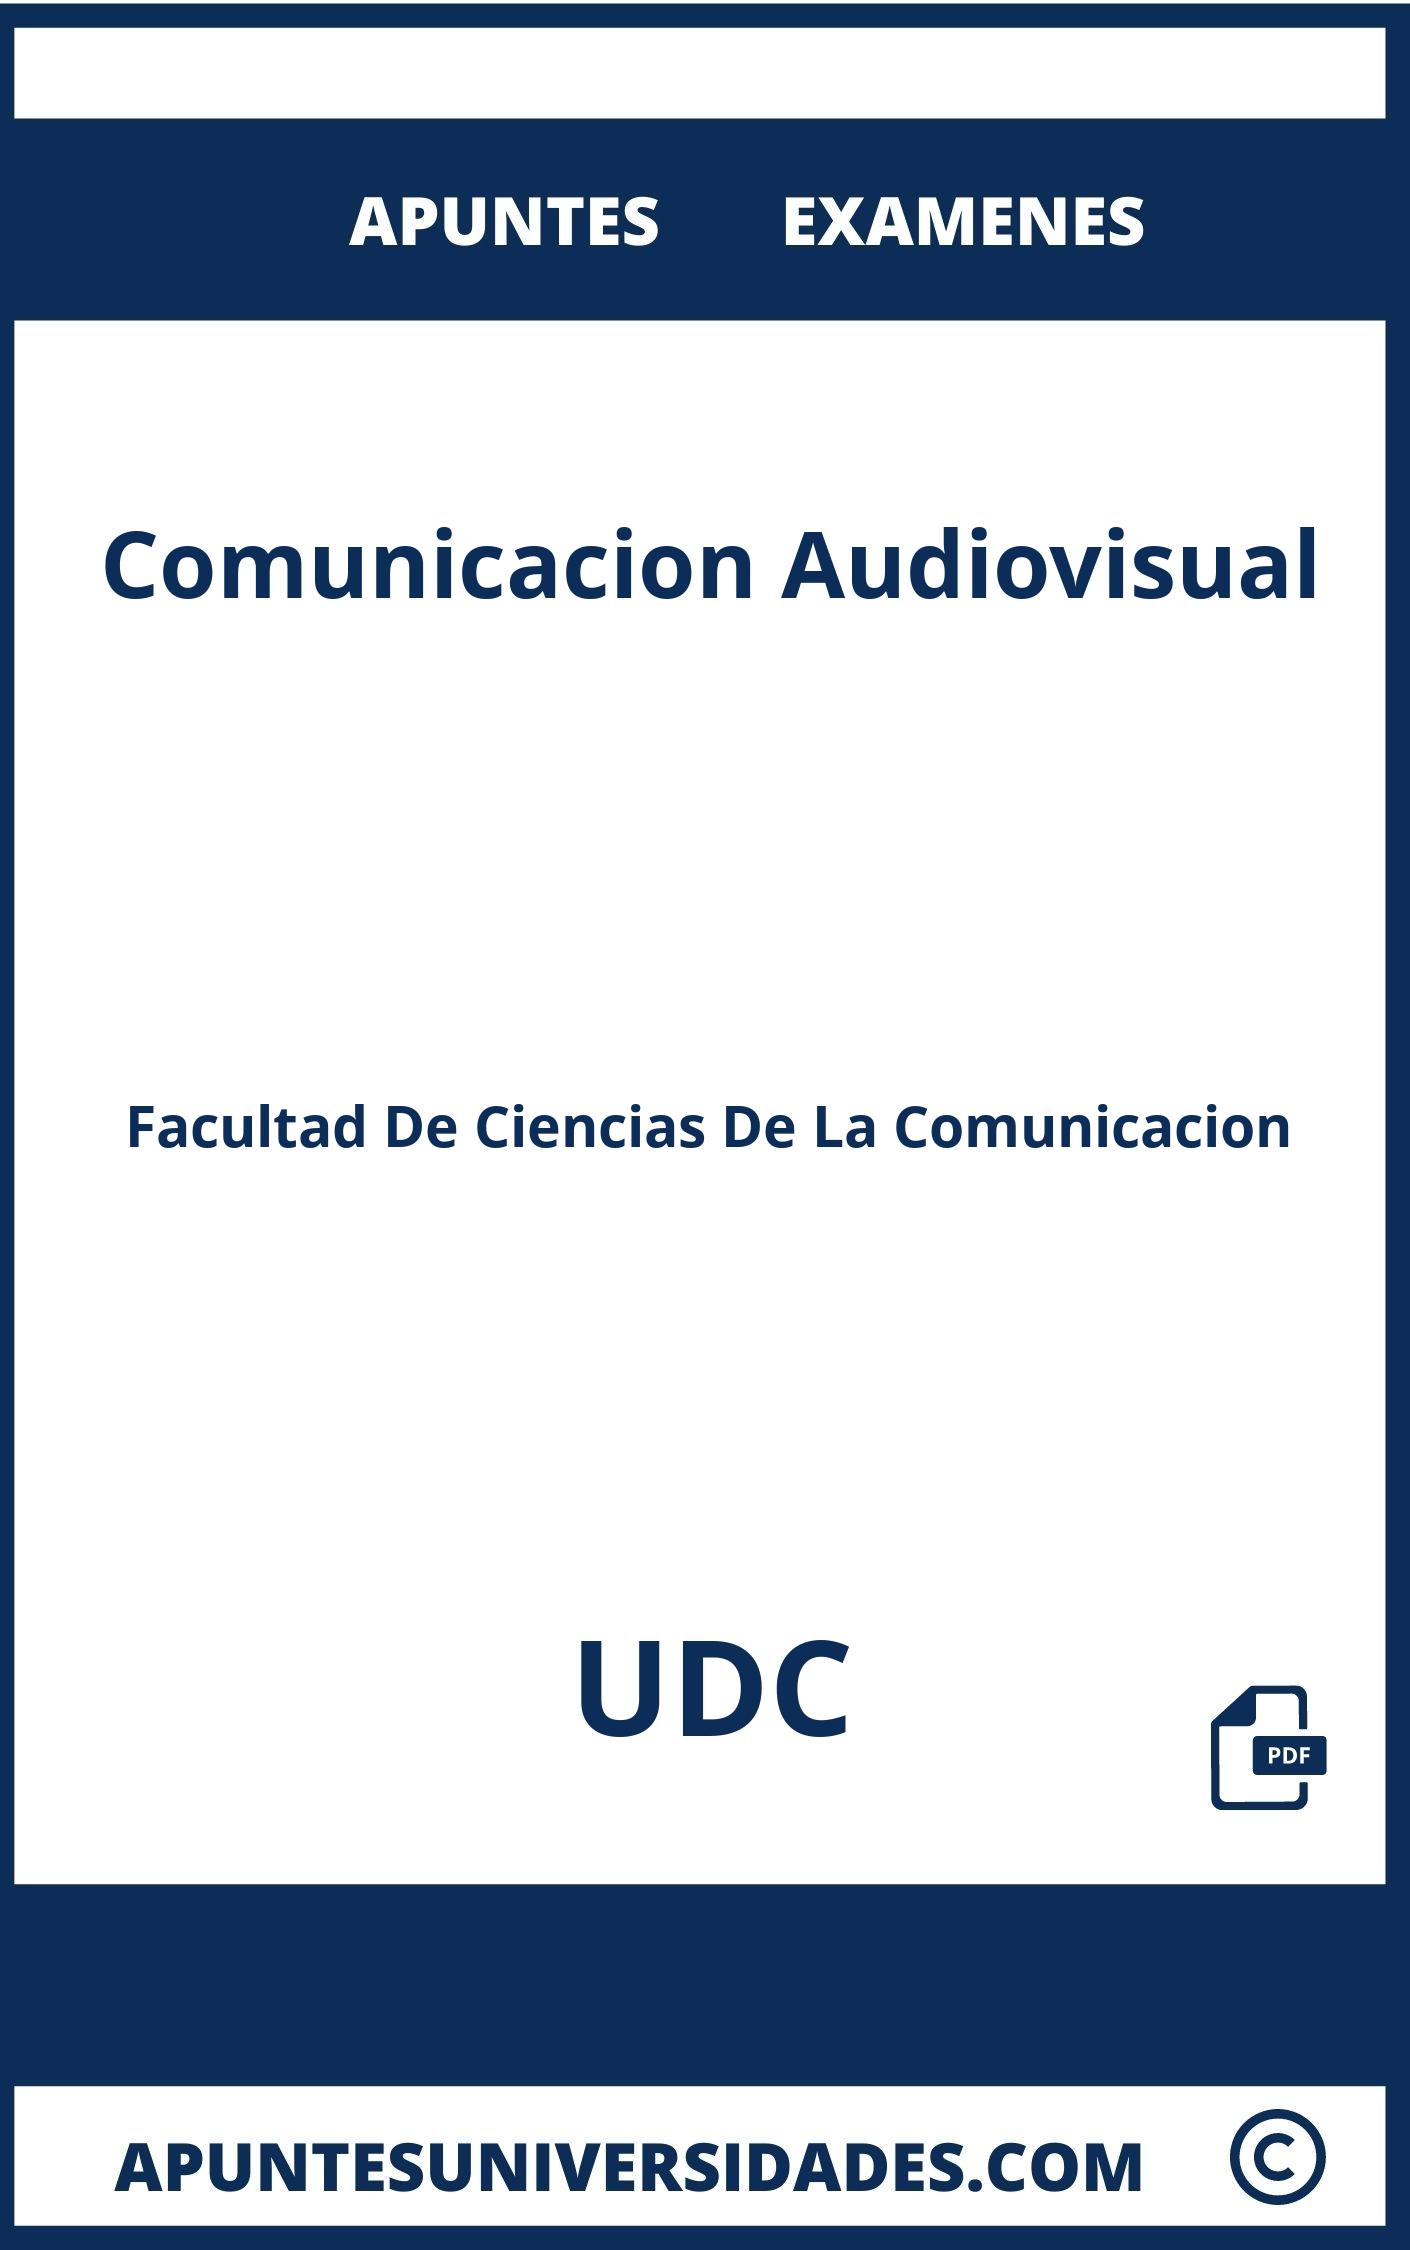 Examenes Apuntes Comunicacion Audiovisual UDC